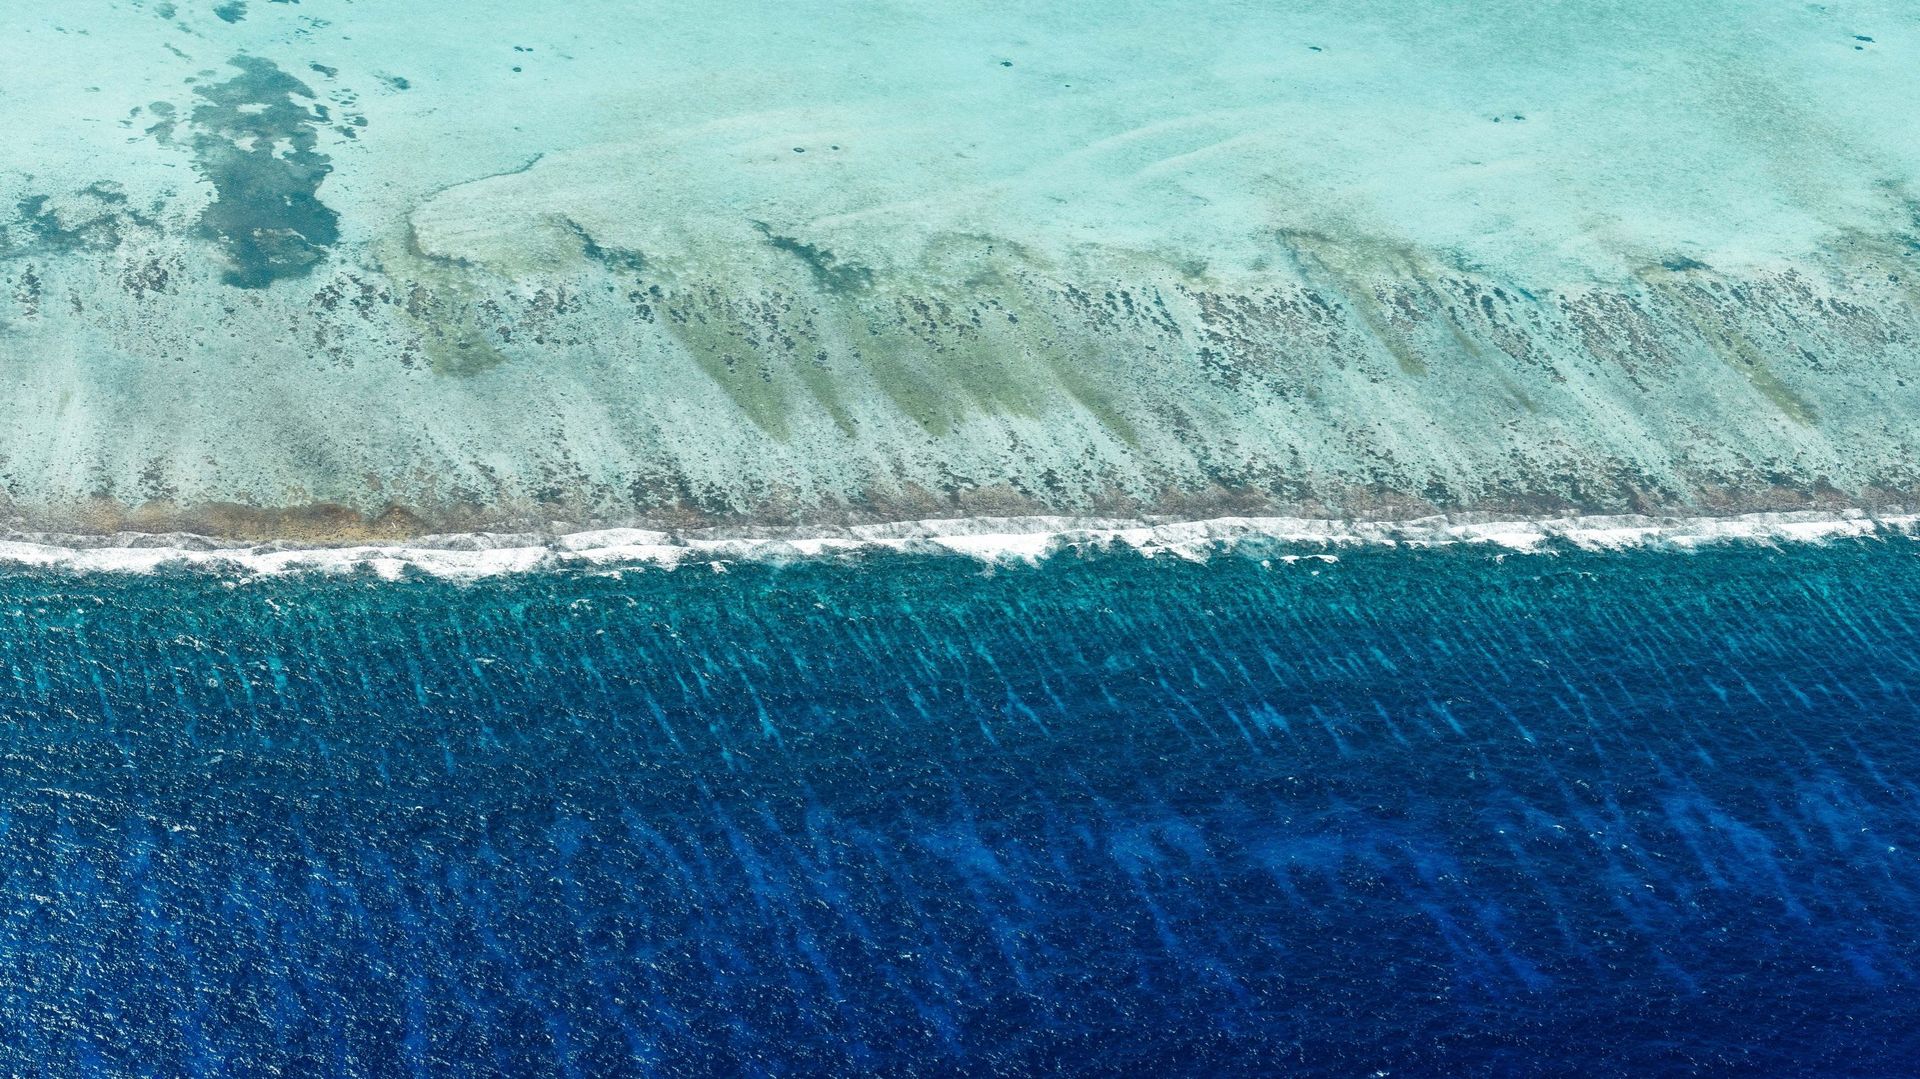 Le Belize abrite la 2e plus grande barrière de corail au monde après l’Australie.